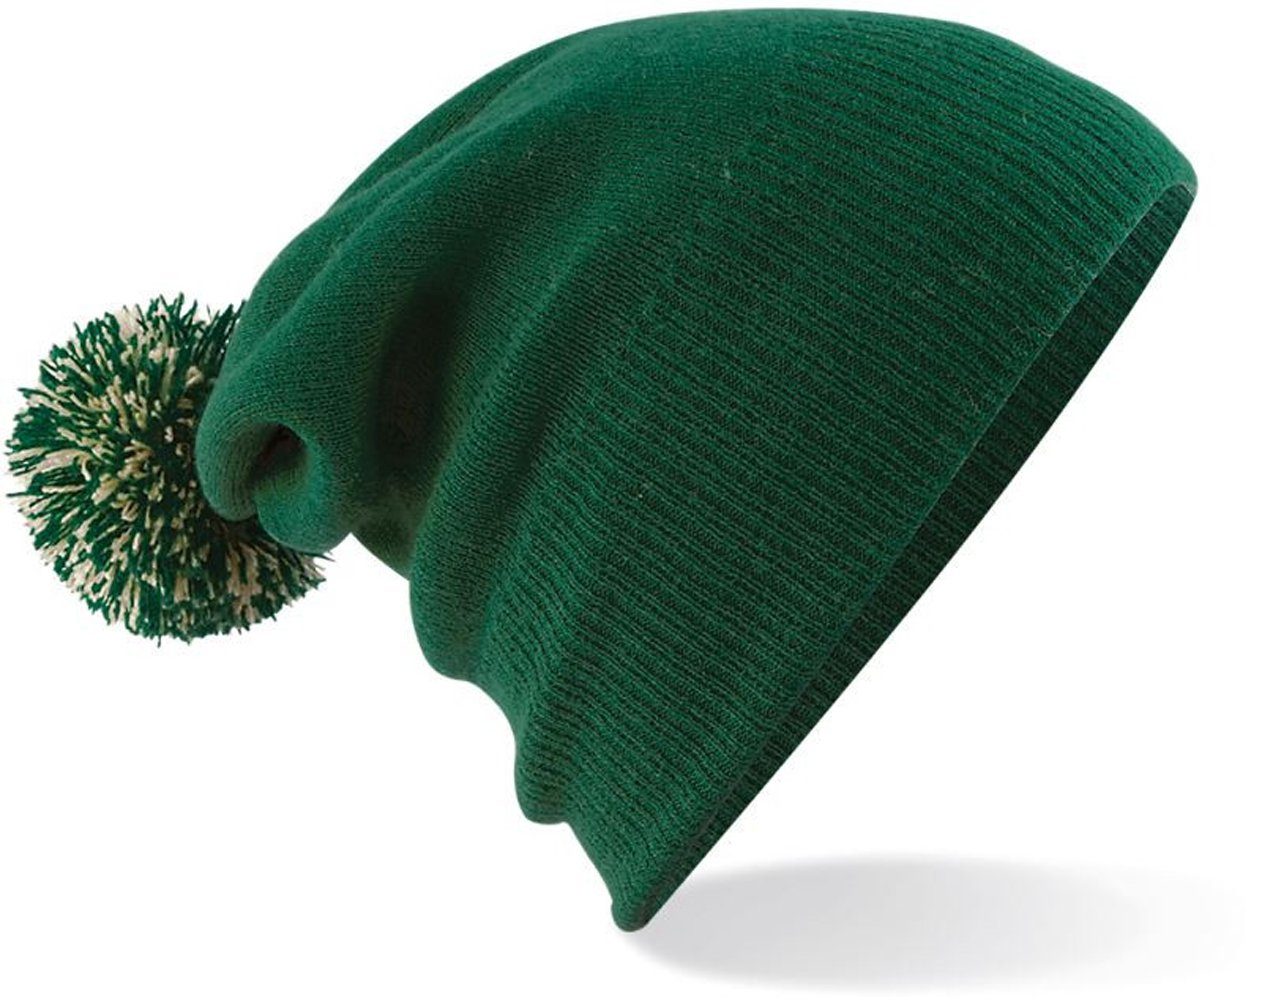 Goodman Design Bommelmütze Strickmütze Beanie Pompon Mütze Pudelmütze Duales Design – mit Umschlag oder als Slouch-Beanie Bottle Green/Off White